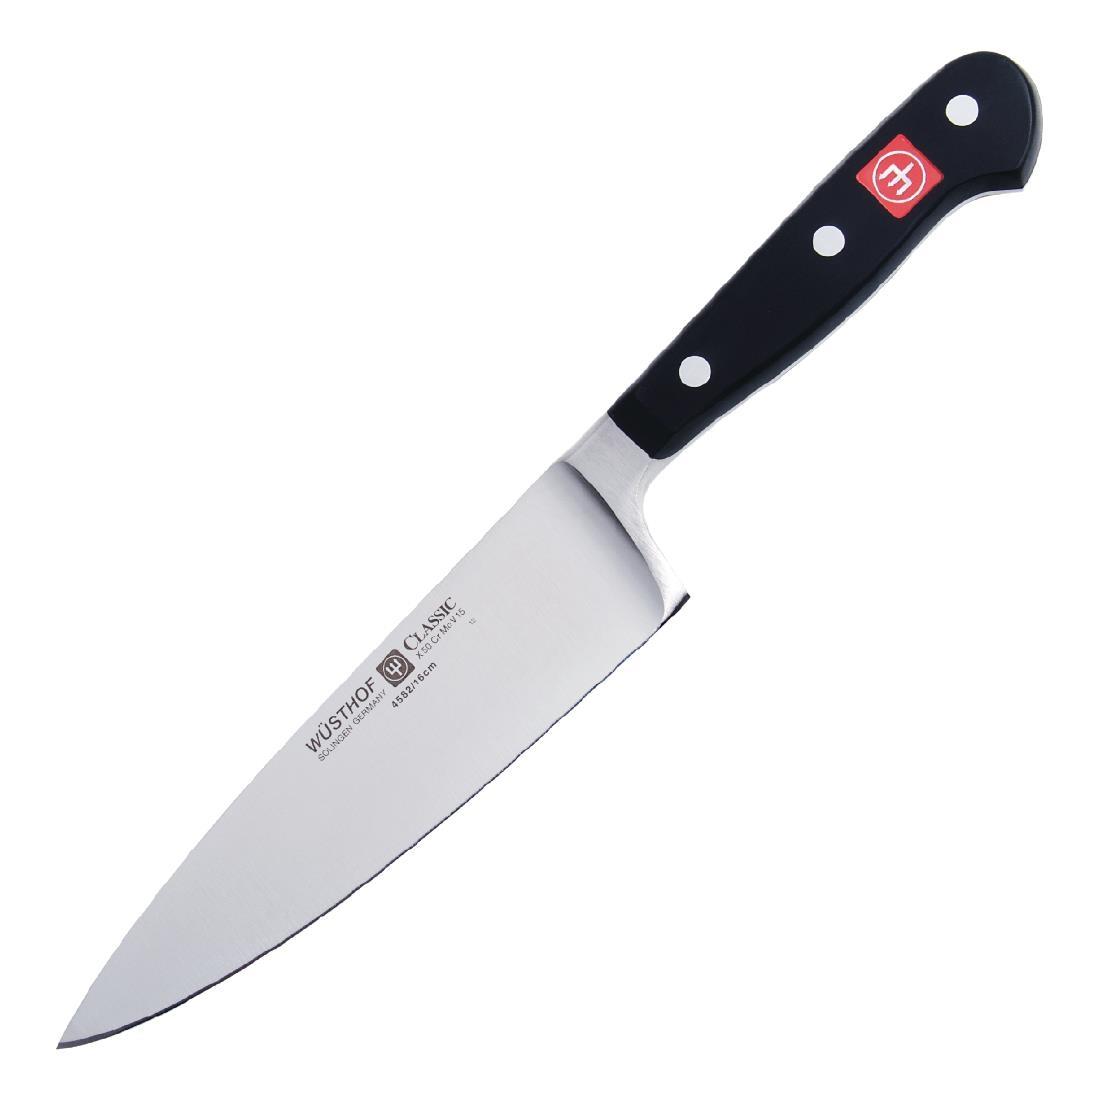 Wusthof Chefs Knife 15cm - C905  - 1